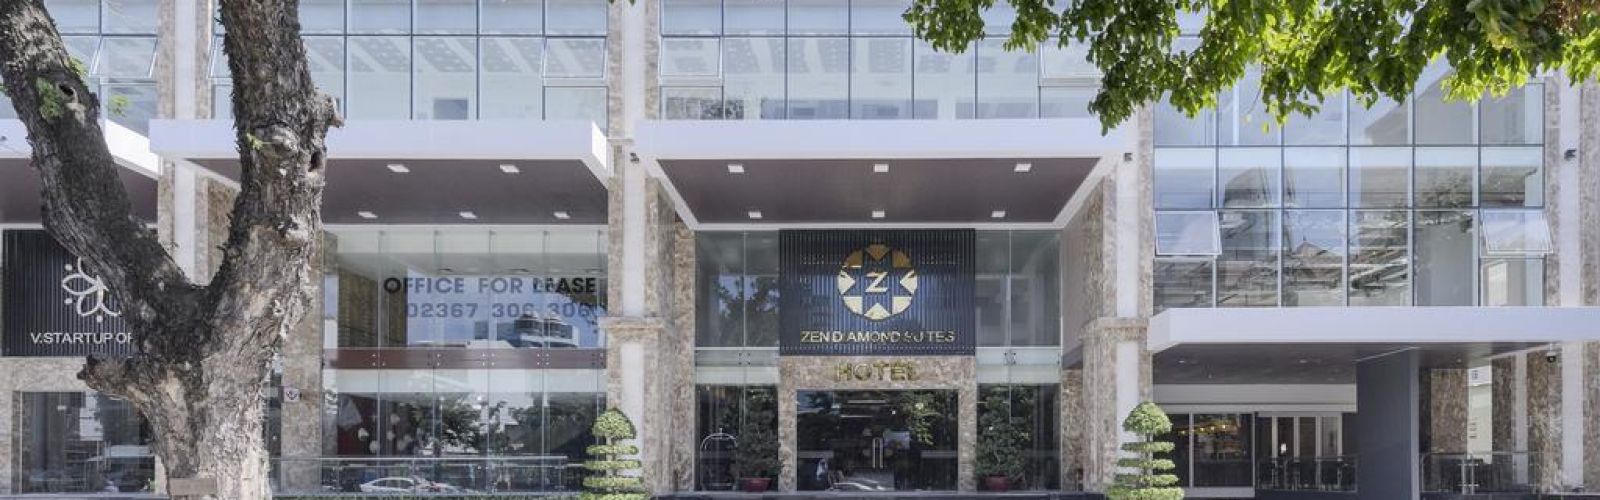 Zen Diamond Suites Hotel